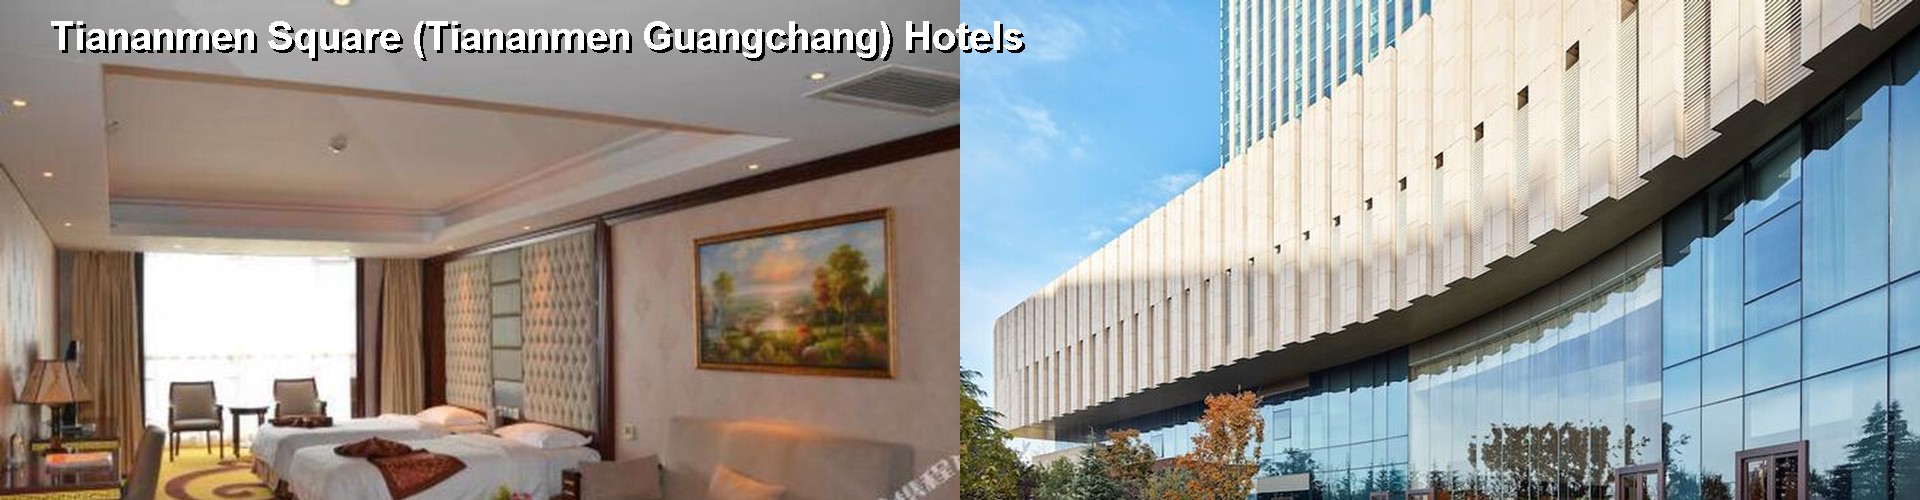 3 Best Hotels near Tiananmen Square (Tiananmen Guangchang)